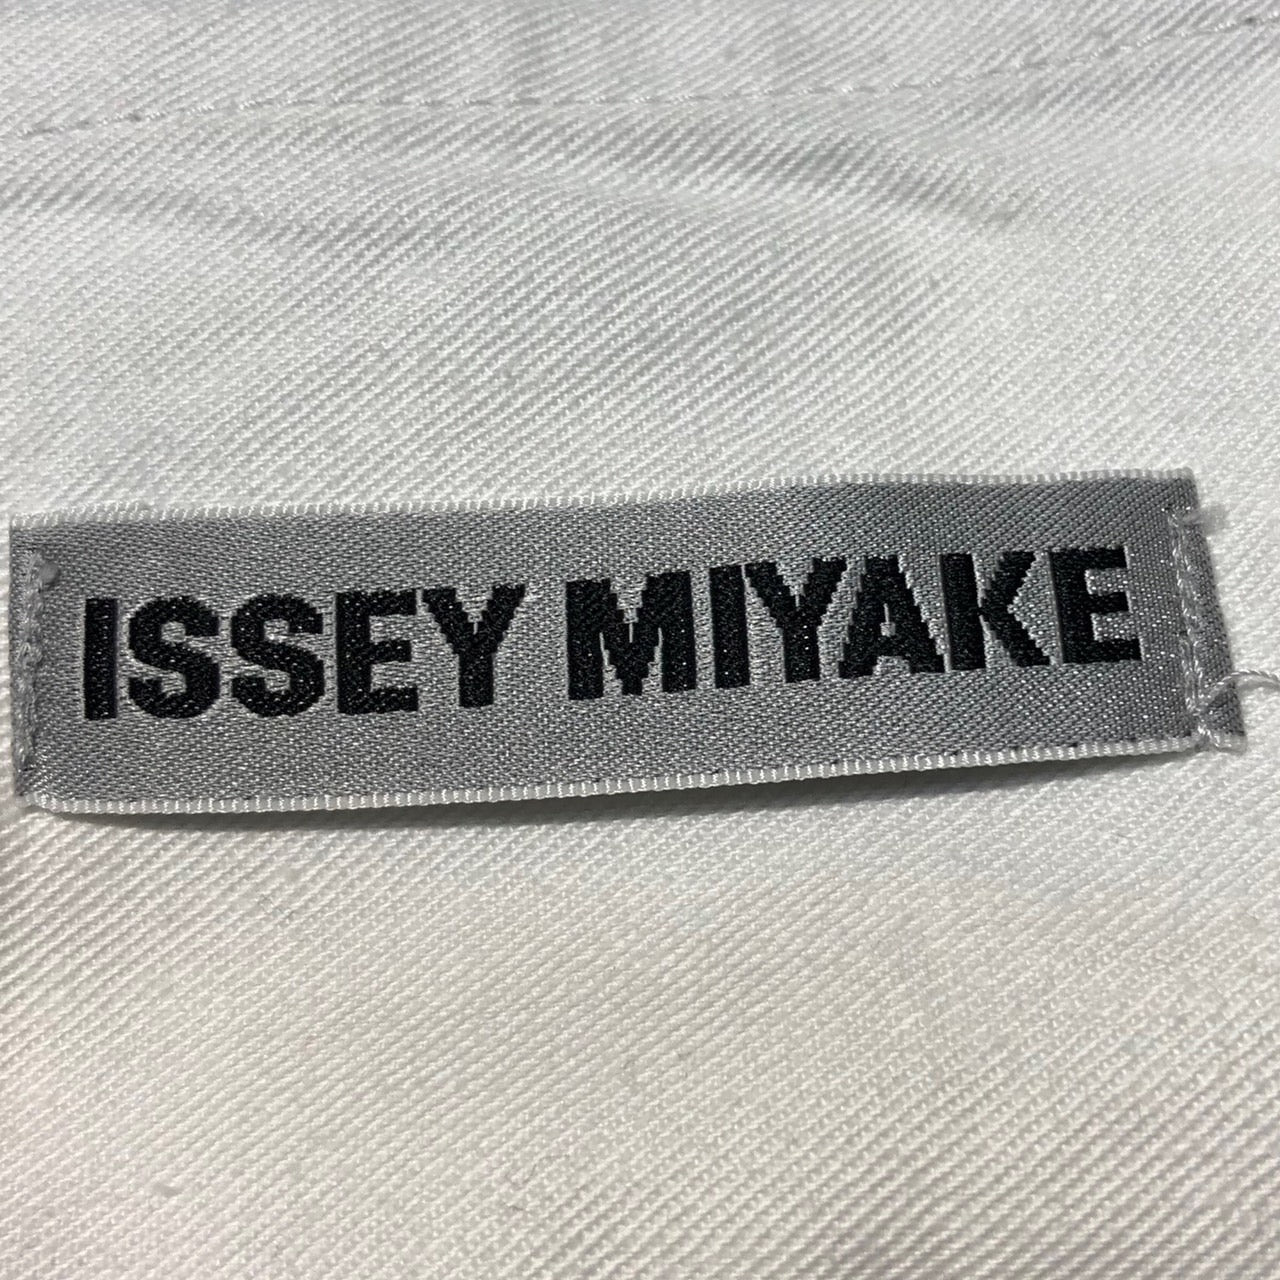 ISSEY MIYAKE(イッセイミヤケ) 水墨画デザインストレッチデニム IM31FF033 1(Sサイズ程度) グレー